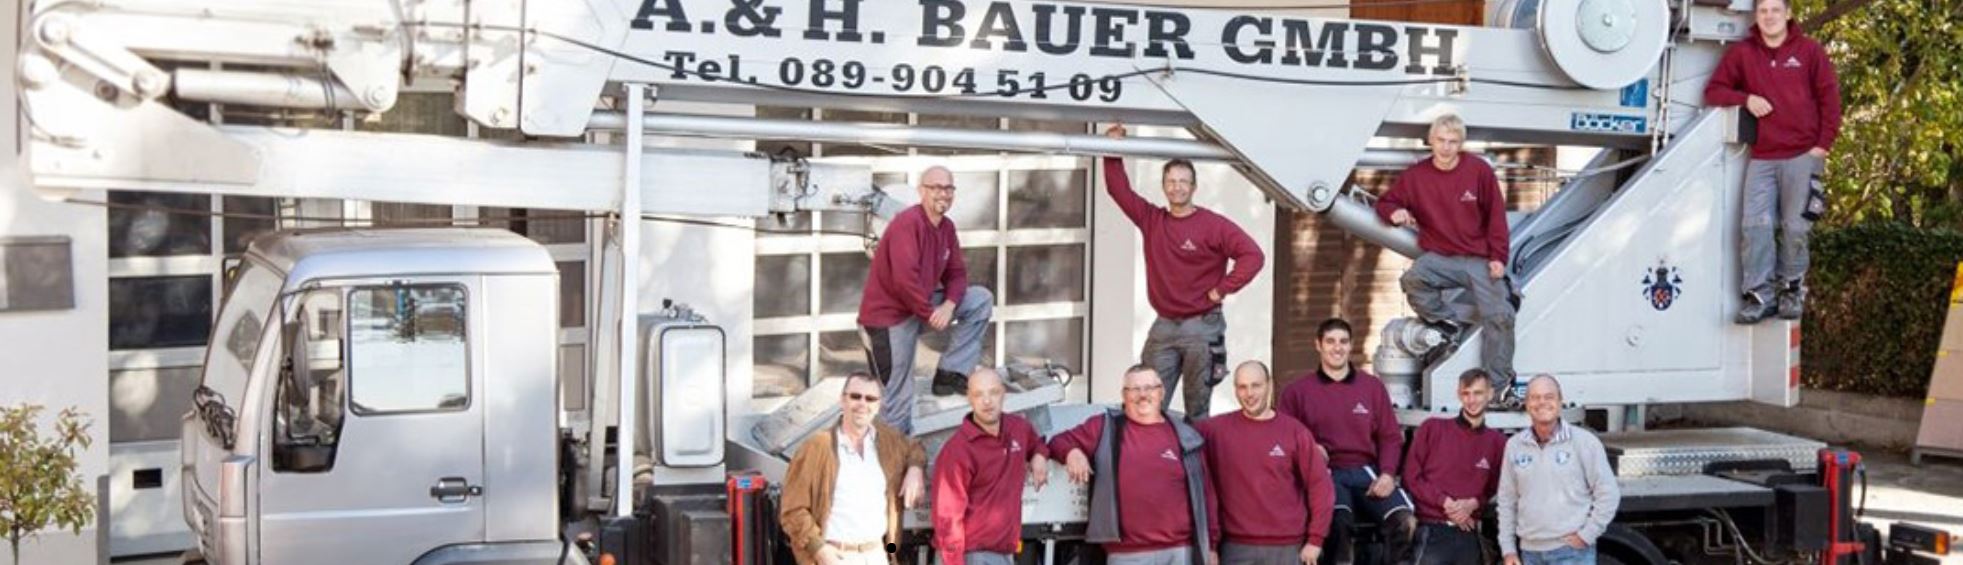 Alle Mitarbeiter - A. & H. Bauer GmbH Spenglerei und Dachdeckerei München